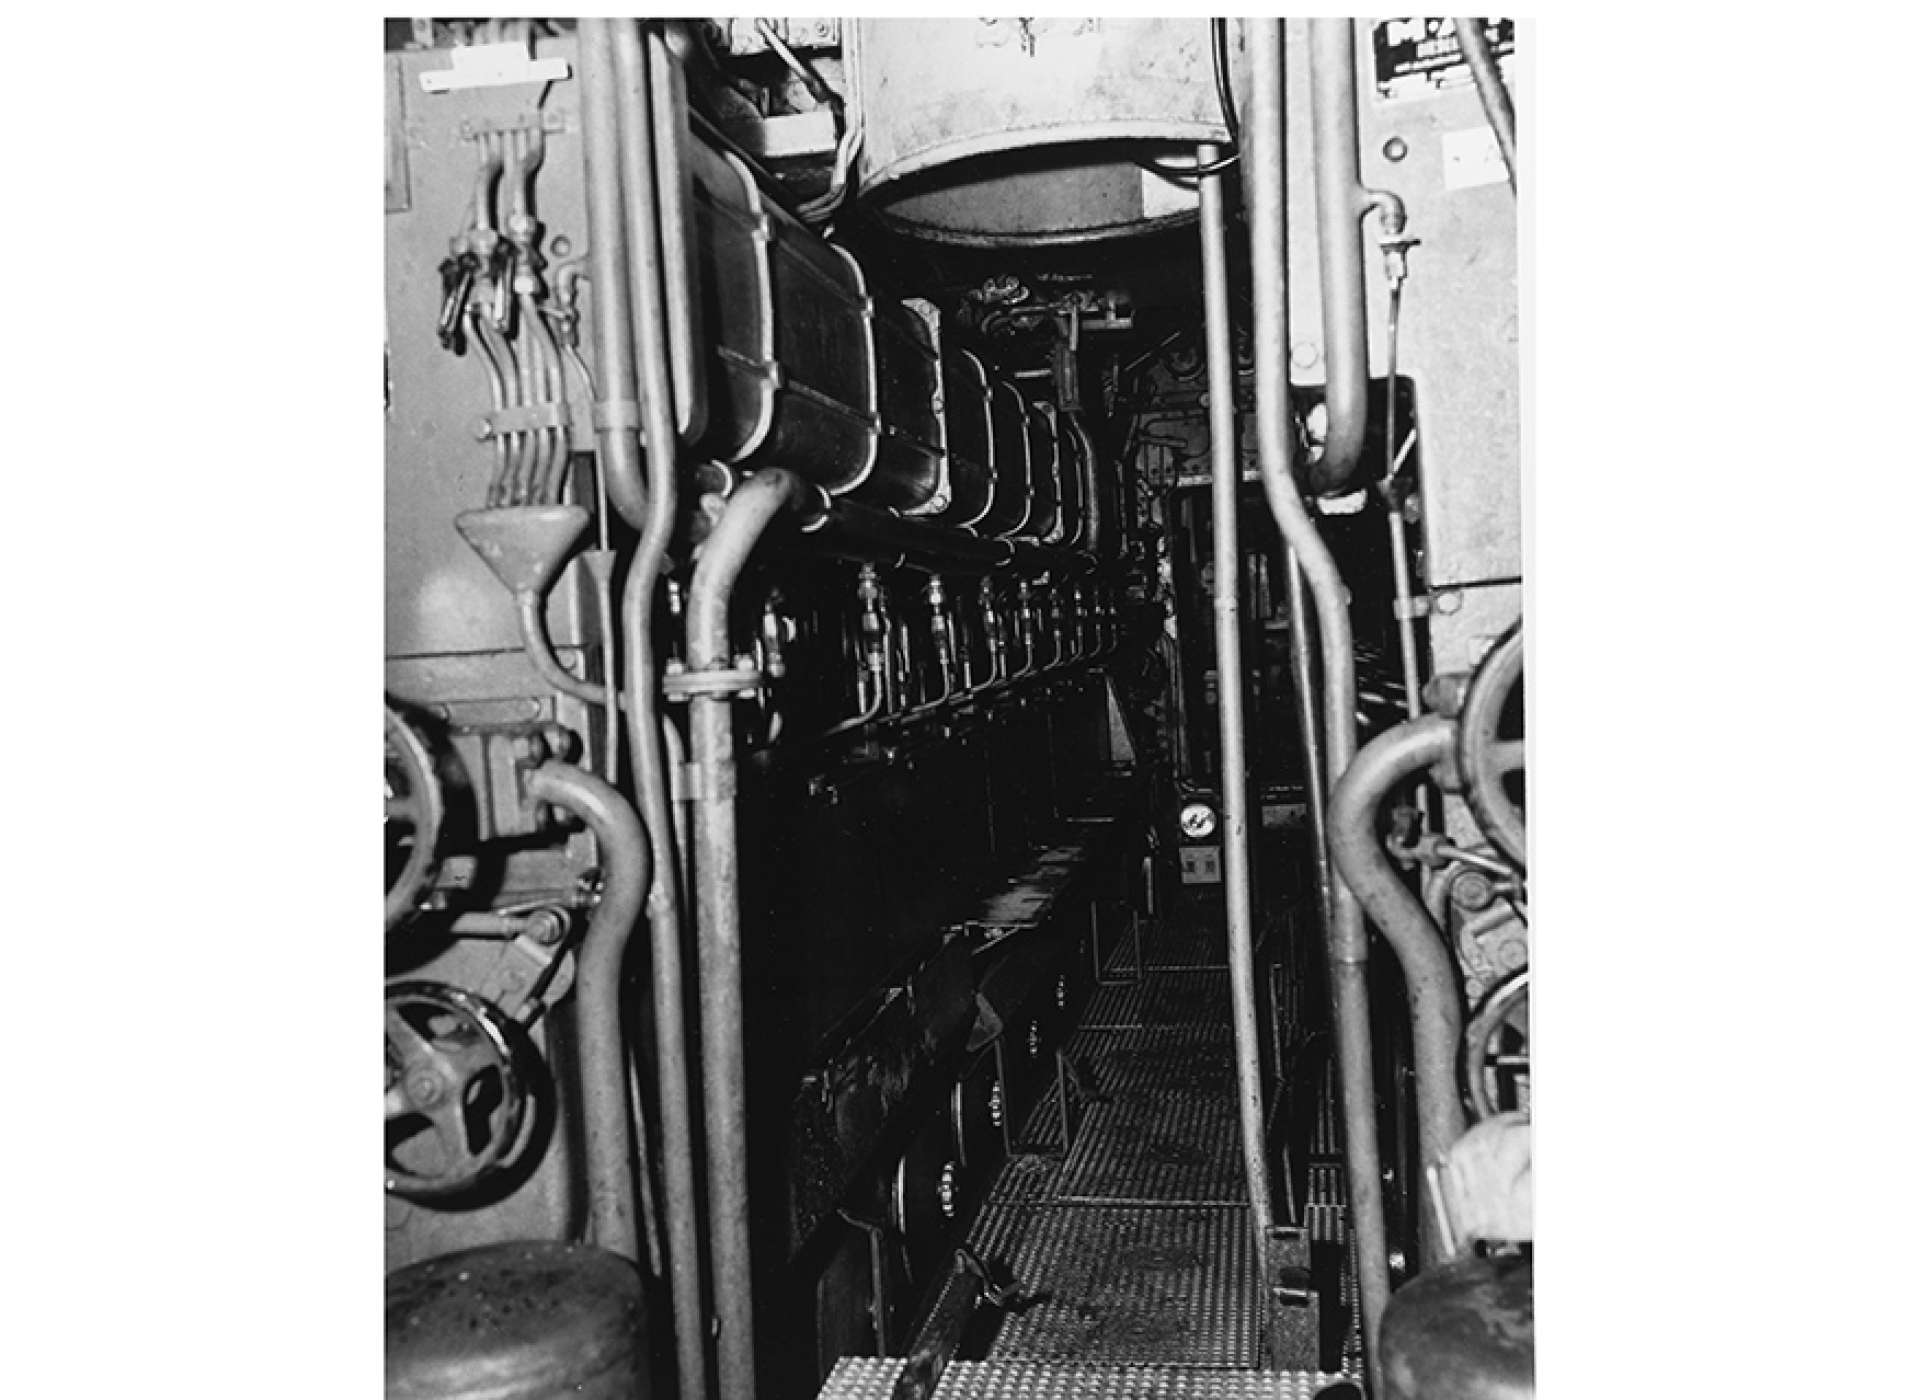 U-505 diesel engines